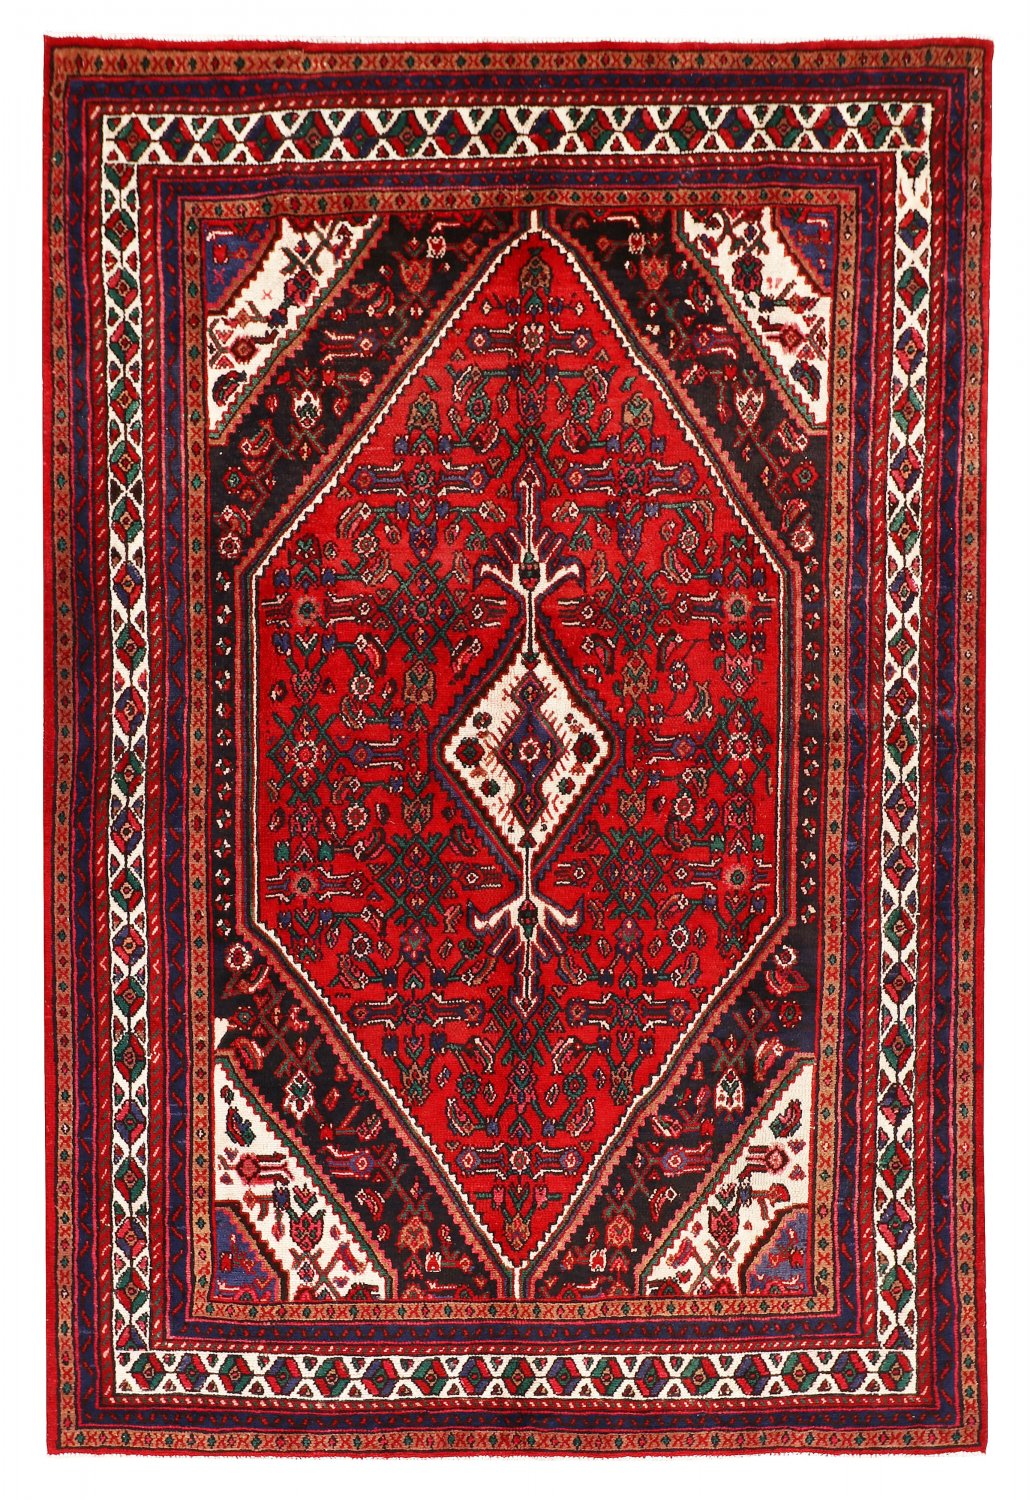 Persian rug Hamedan 303 x 208 cm